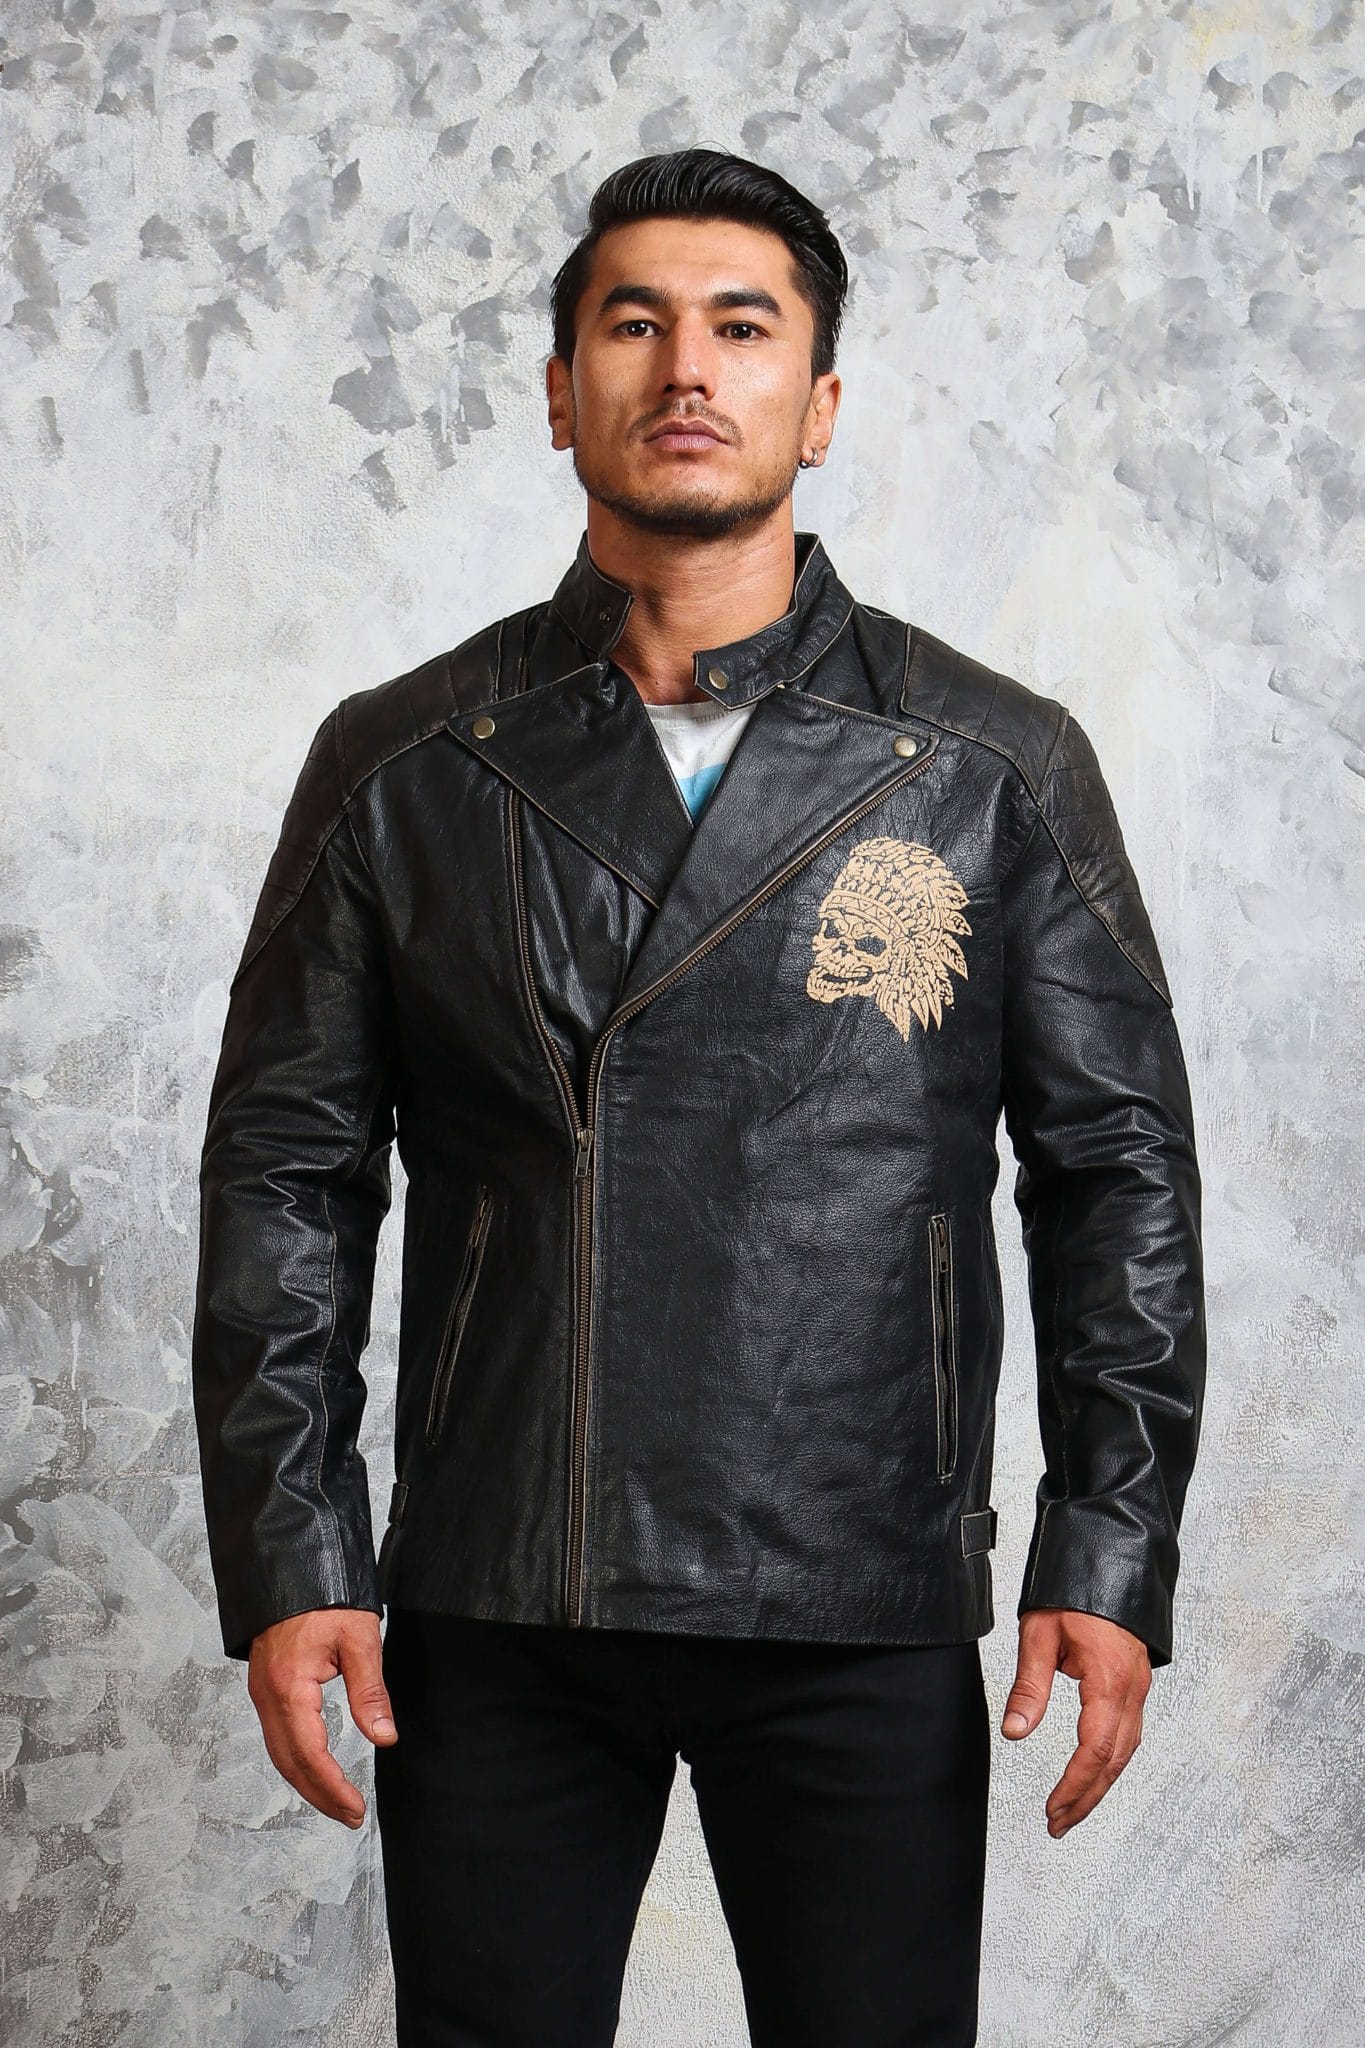 Indian Skull Leather Jacket for Men in Black